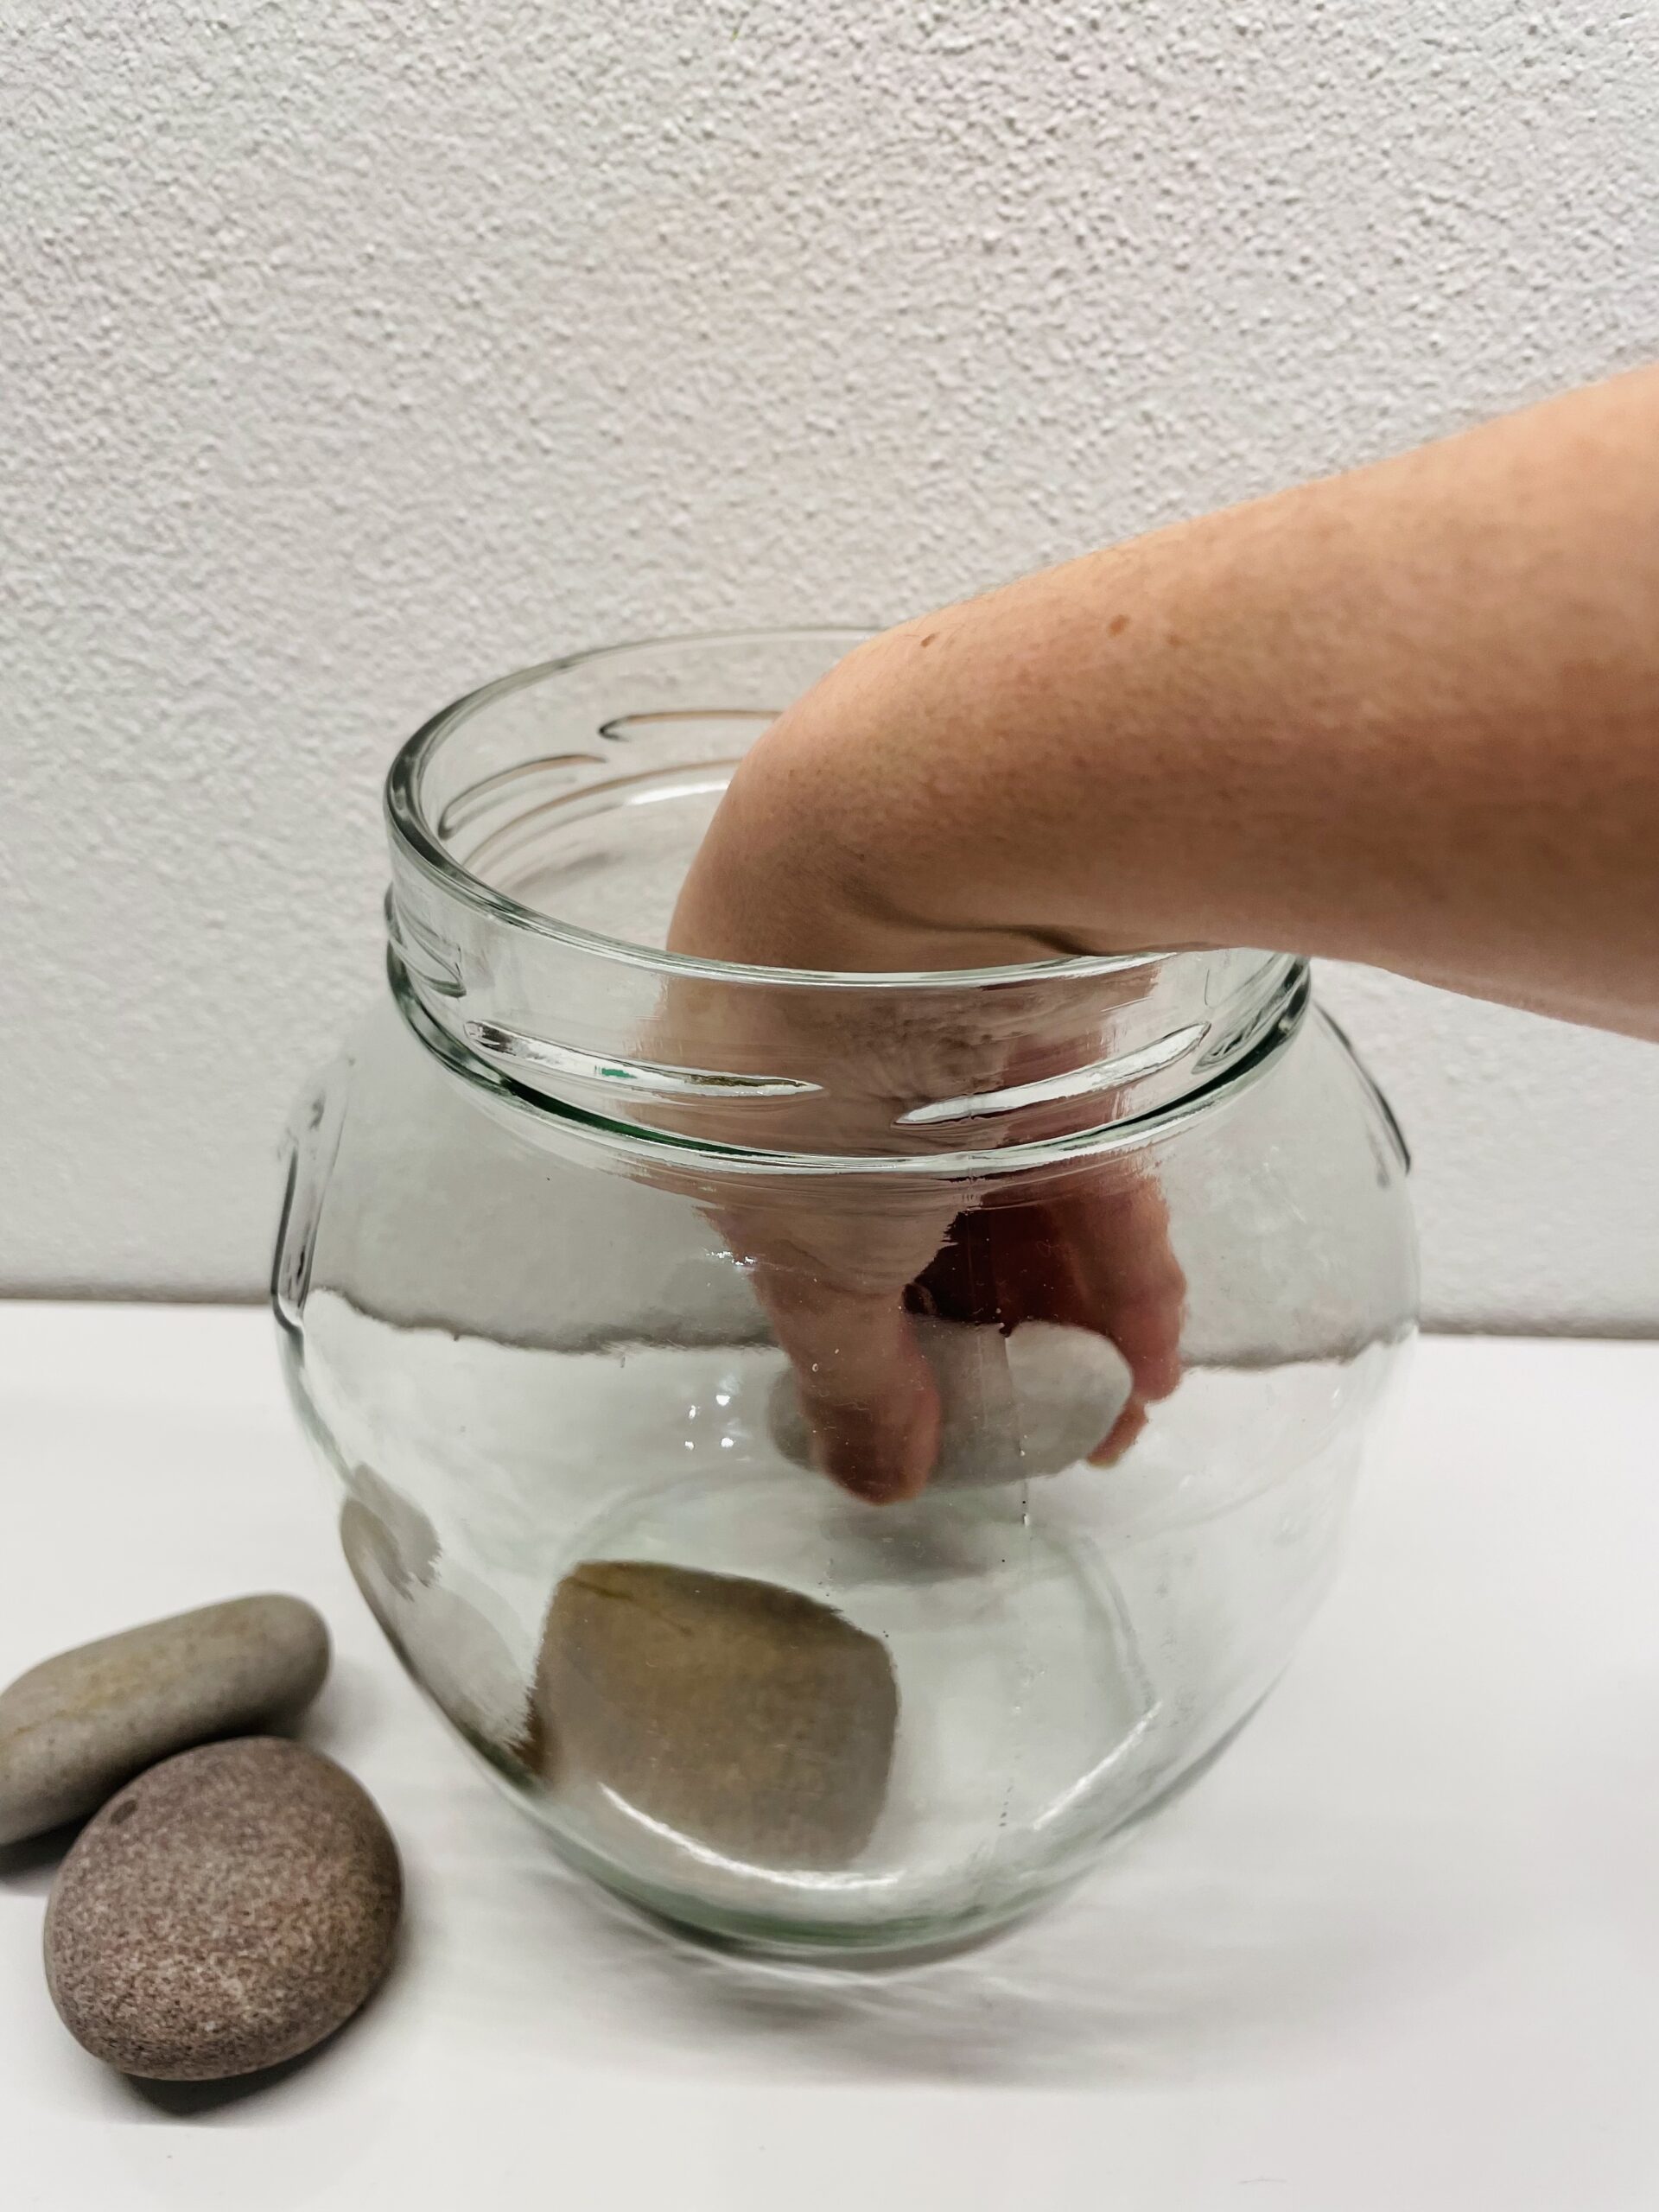 Bild zum Schritt 2 für das Bastel- und DIY-Abenteuer für Kinder: 'Dann legt ihr die sauberen Steine vorsichtig in das Glas.'